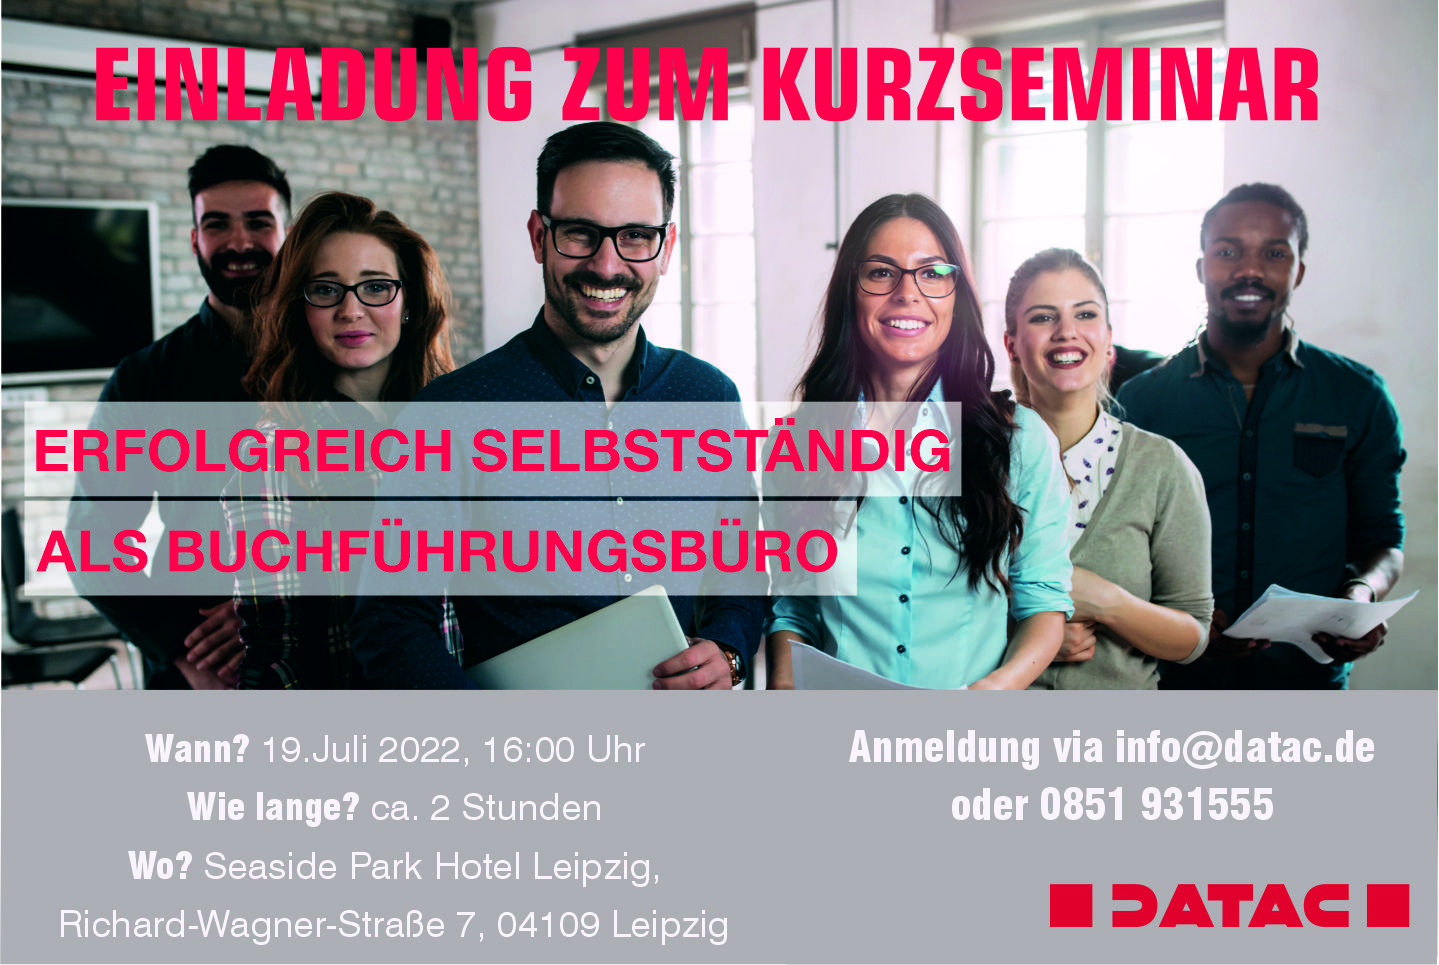 Einladung zum Kurzseminar von DATAC in Leipzig "Erfolgreich selbstständig als Buchführungsbüro"